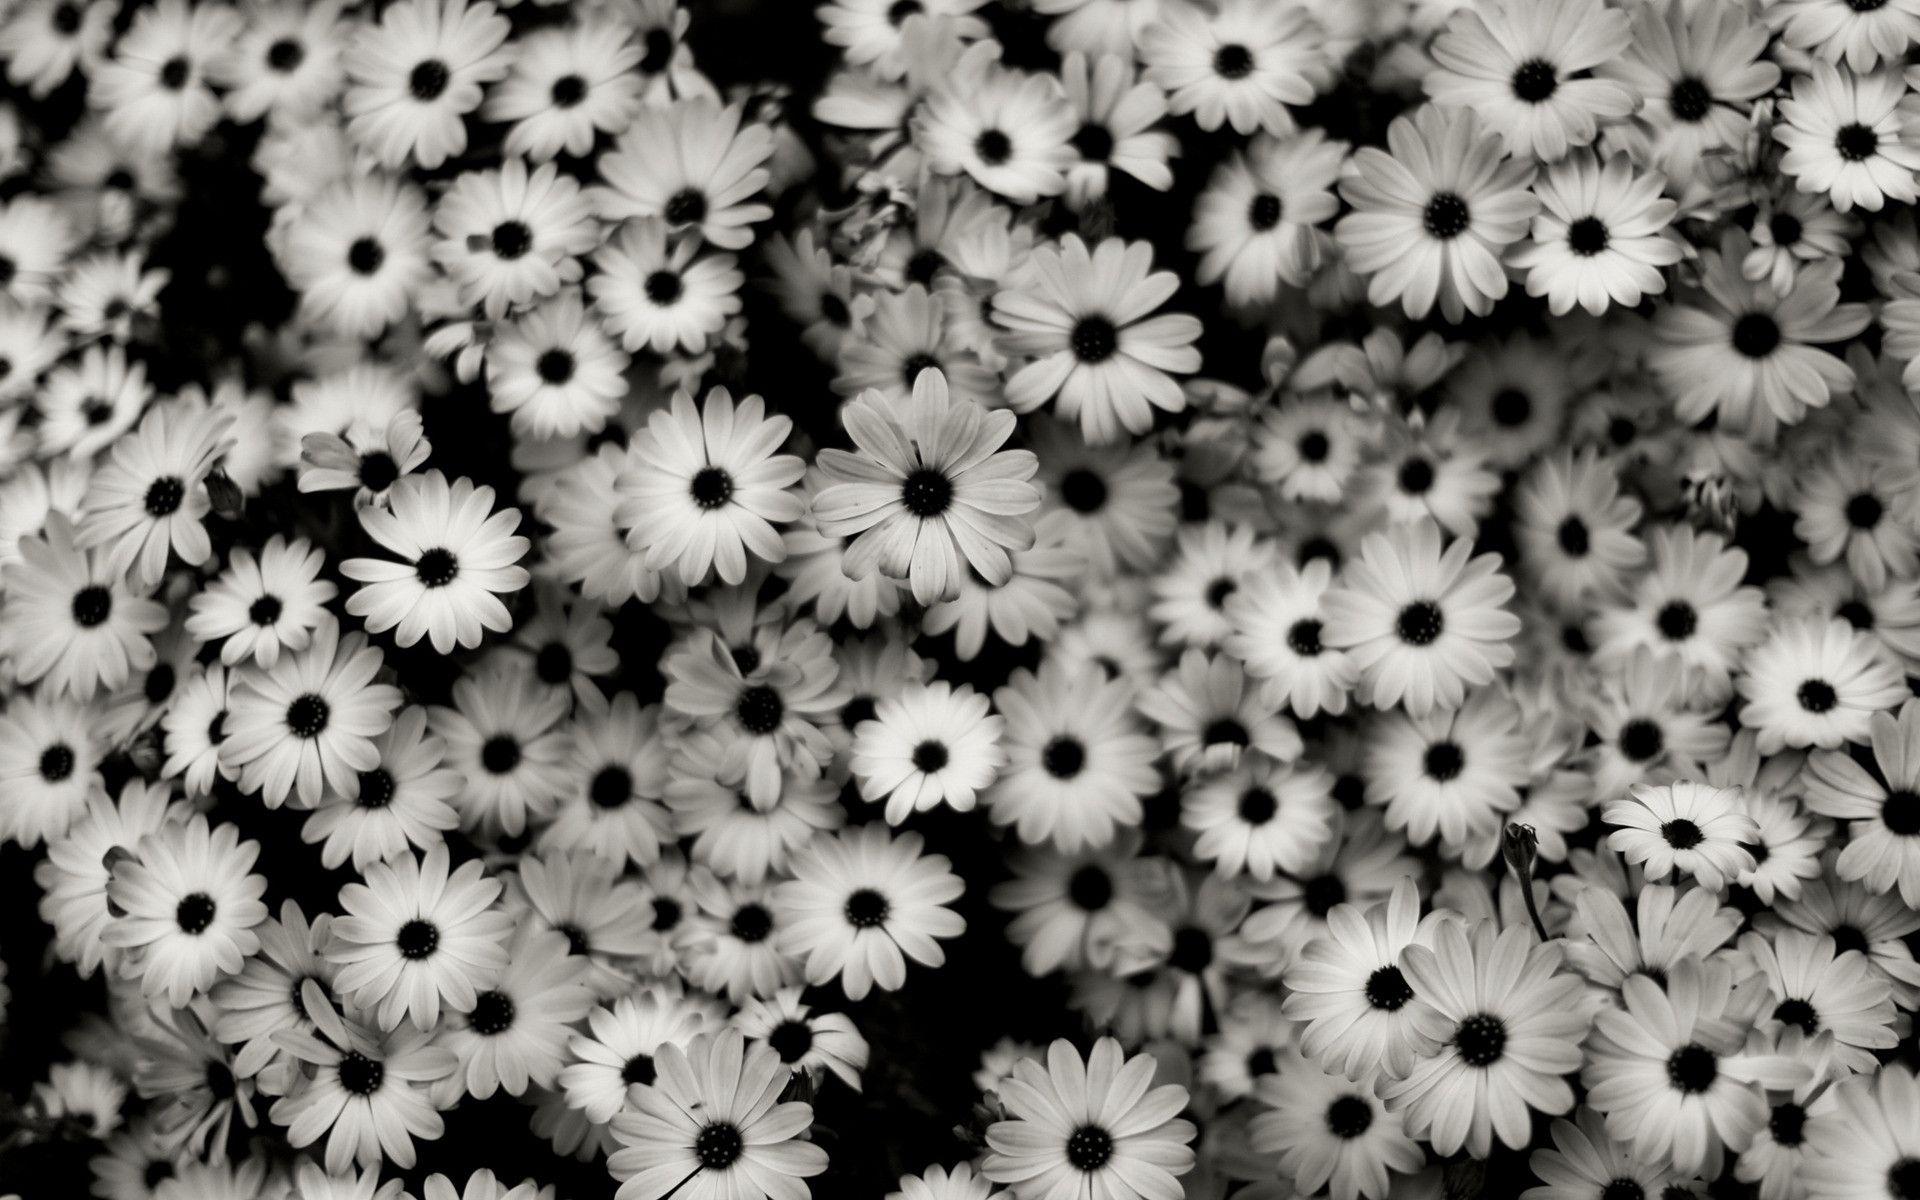 Black and White Aesthetic Flower Wallpaper Free Black